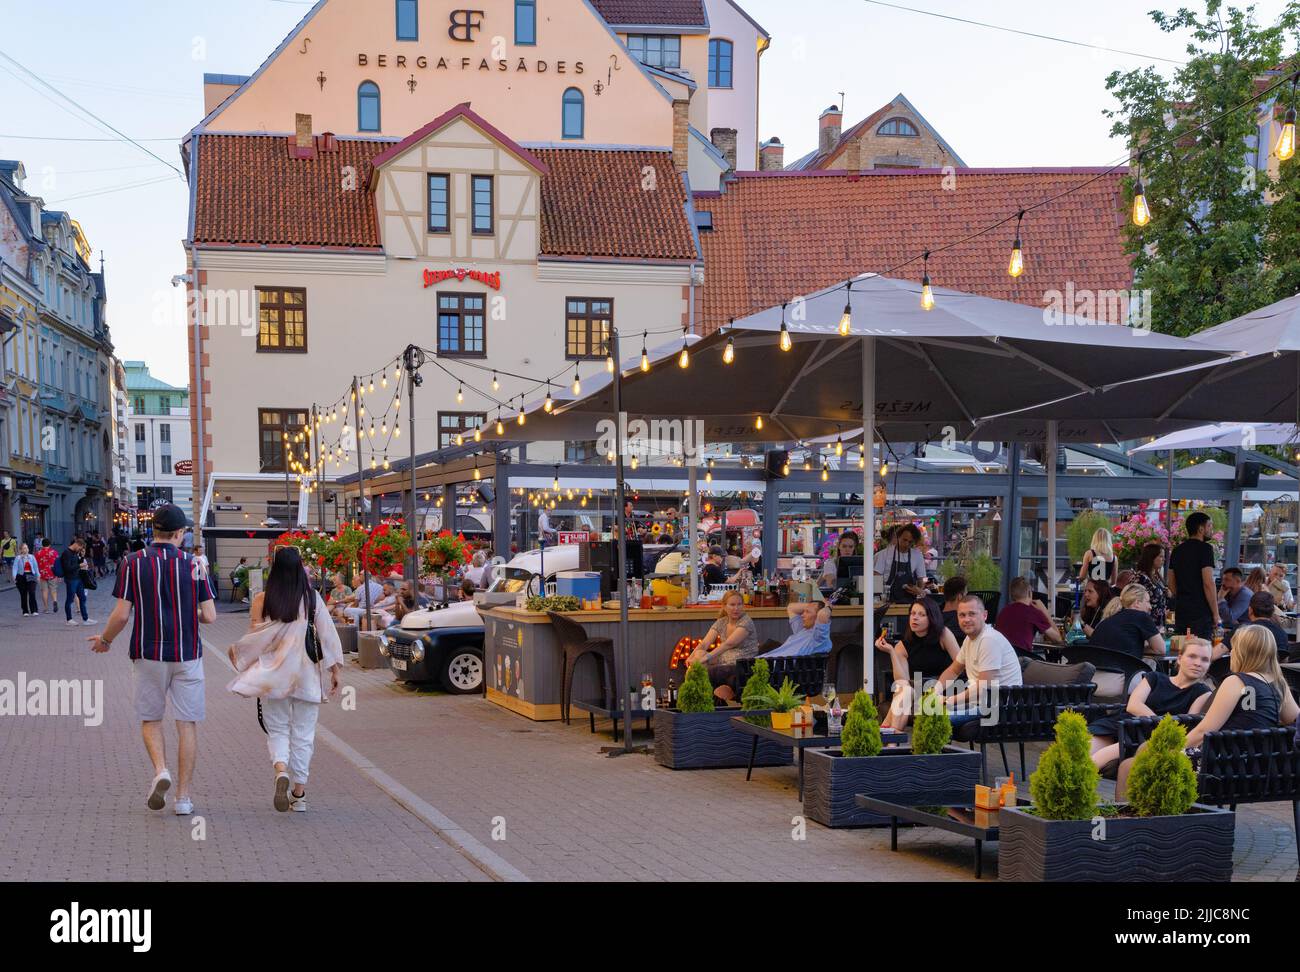 Straßenszene Riga, da die Bars am Abend mit Menschen gefüllt sind, die trinken; - Nachtleben und Rigaer Lifestyle, Rigaer Altstadt, Riga Lettland Europa Stockfoto